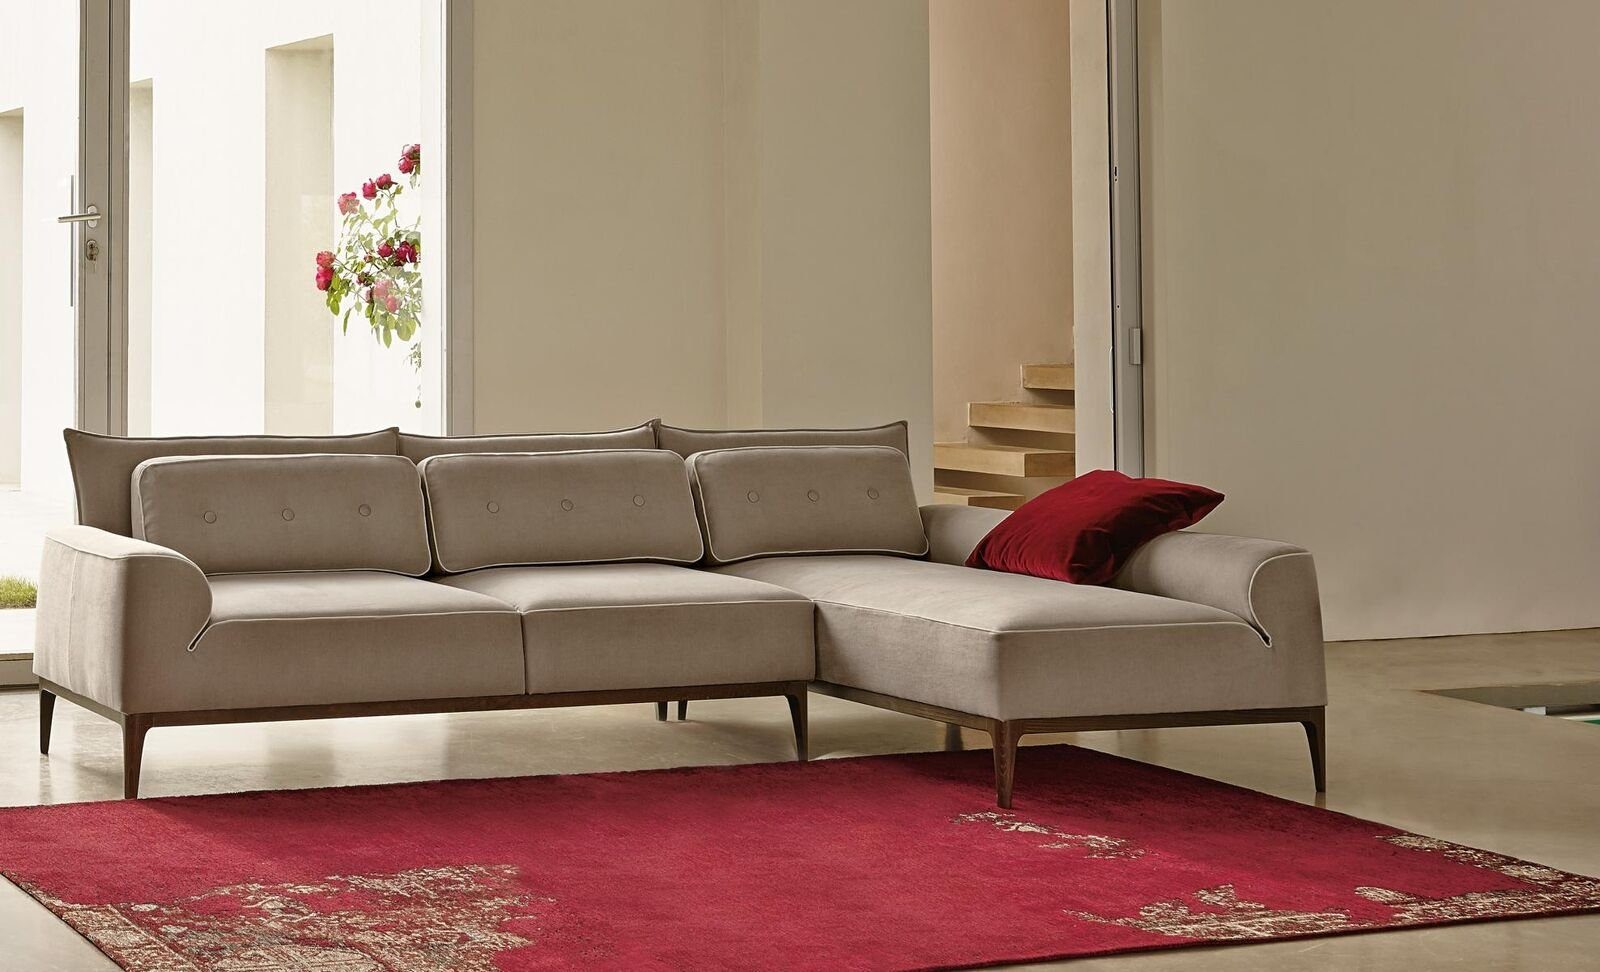 JVmoebel Ecksofa Ecksofa Möbel Grau Form Möbel L Luxus Wohnzimmer Design Couch Sofa